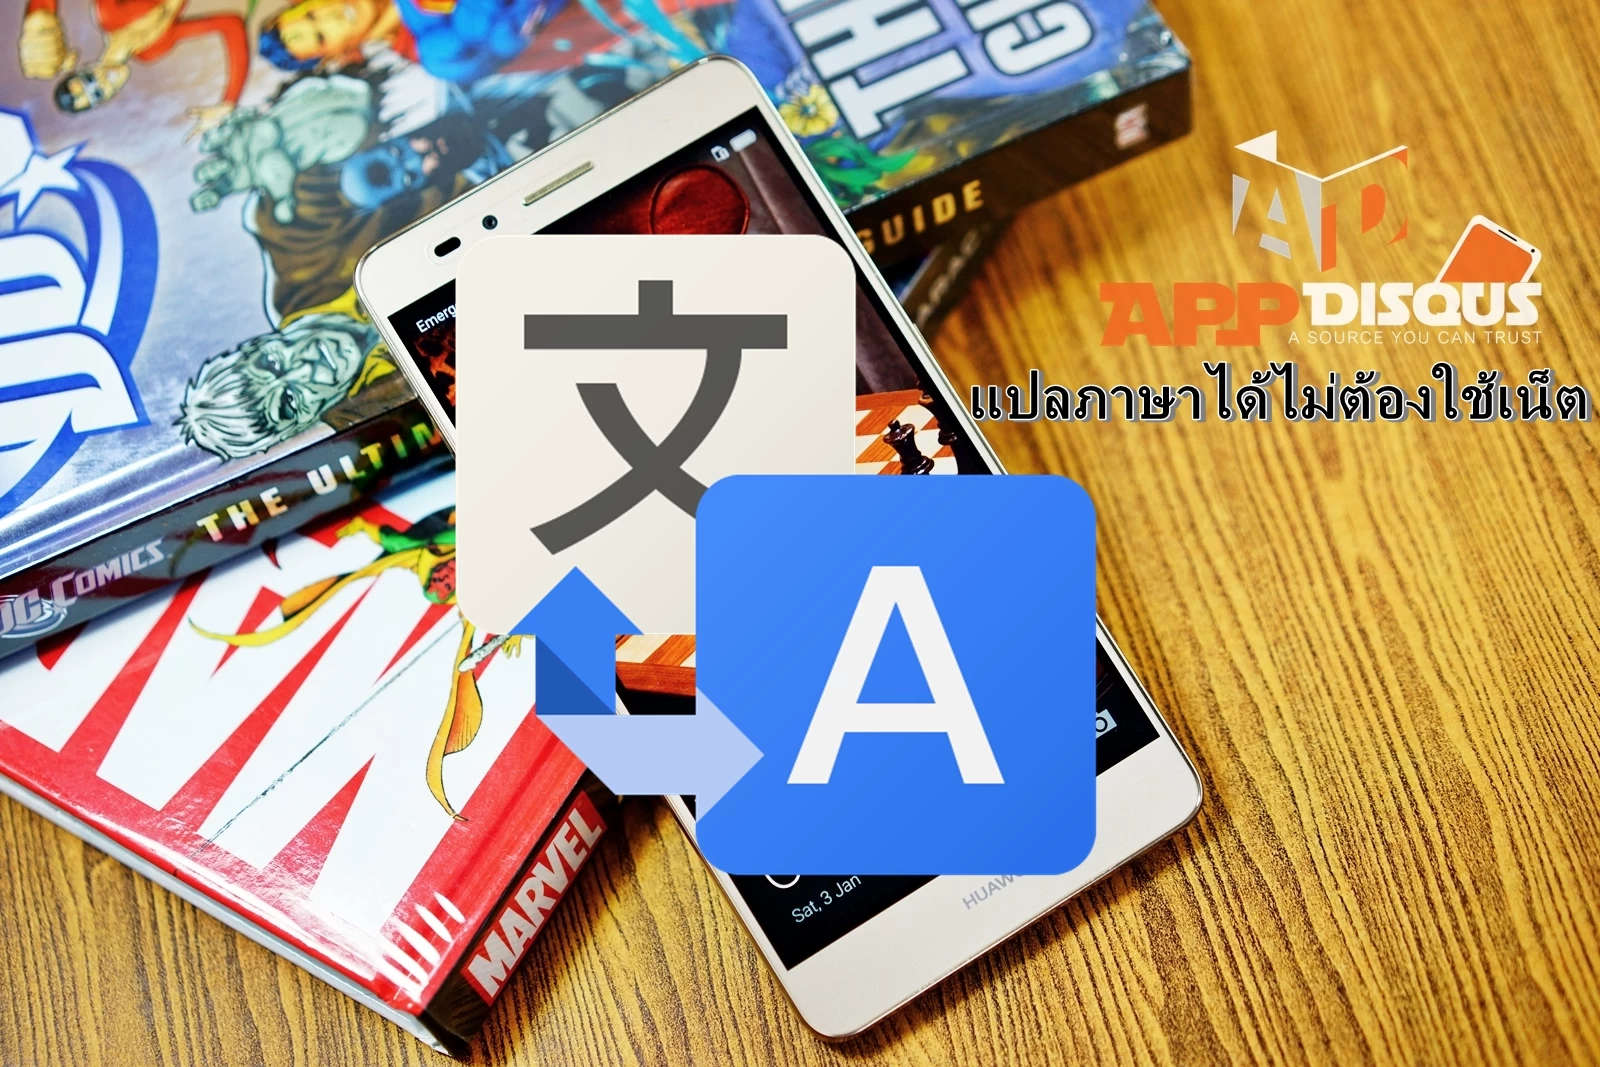 google translate offline | Tips | Tip: วิธีตั้งค่าให้แอพแปลภาษา Google Translate แปลภาษาได้ทุกที่ทุกเวลาโดยไม่ต้องใช้เน็ต ทำได้บนเครื่องระบบ Android เท่านั้น!